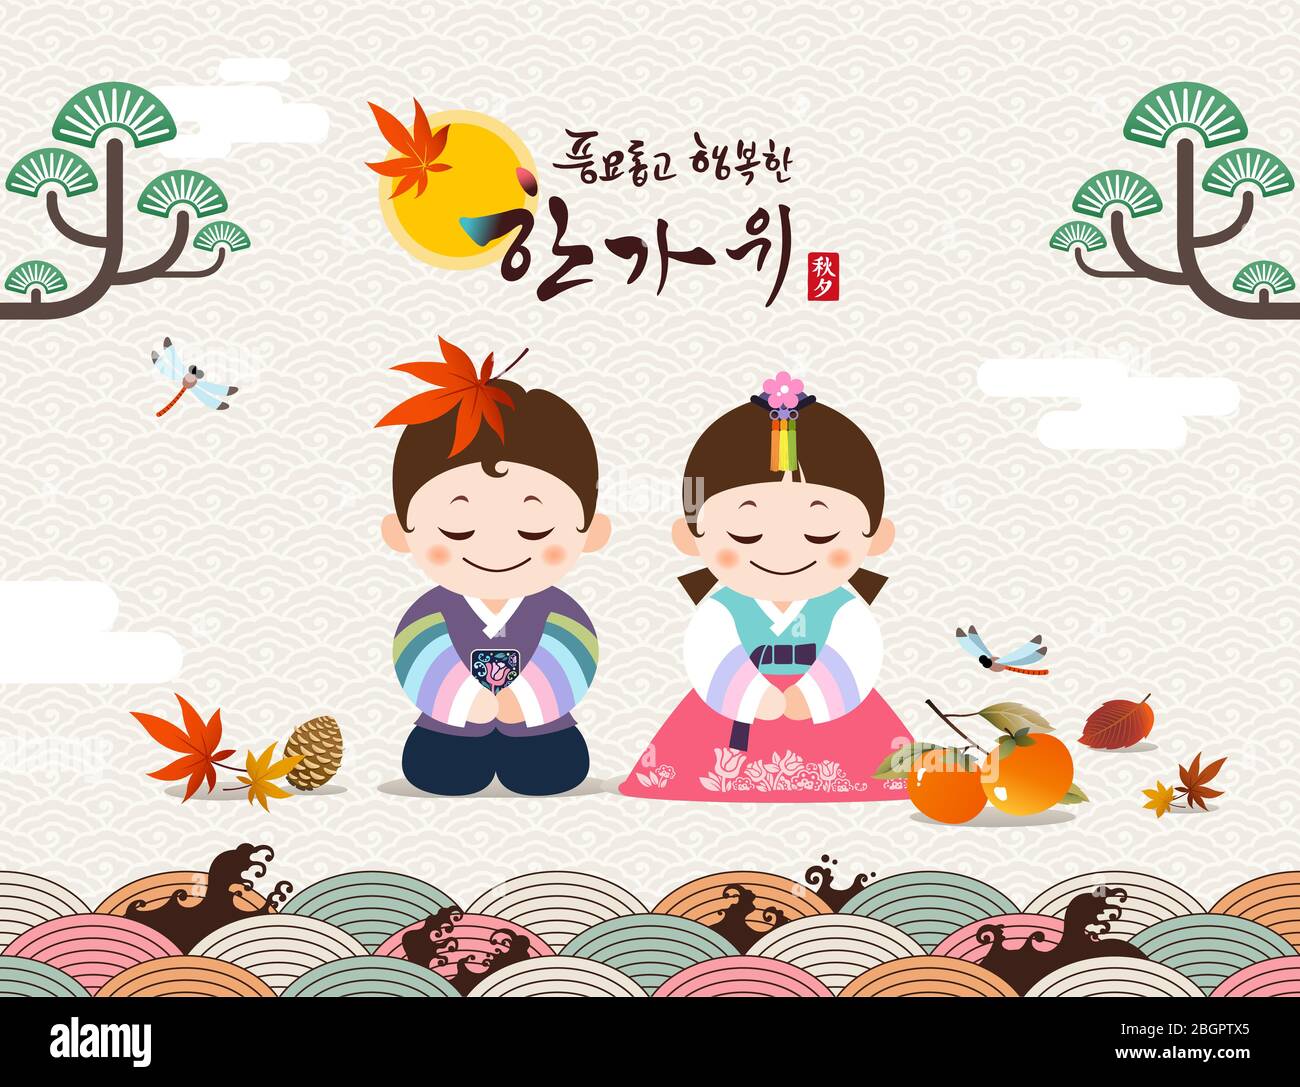 Bonne fête de Thanksgiving en Corée. Les personnages traditionnels Hanbok accueillent les enfants. Récolte riche et heureux Chuseok, Hangawi, traduction coréenne. Illustration de Vecteur